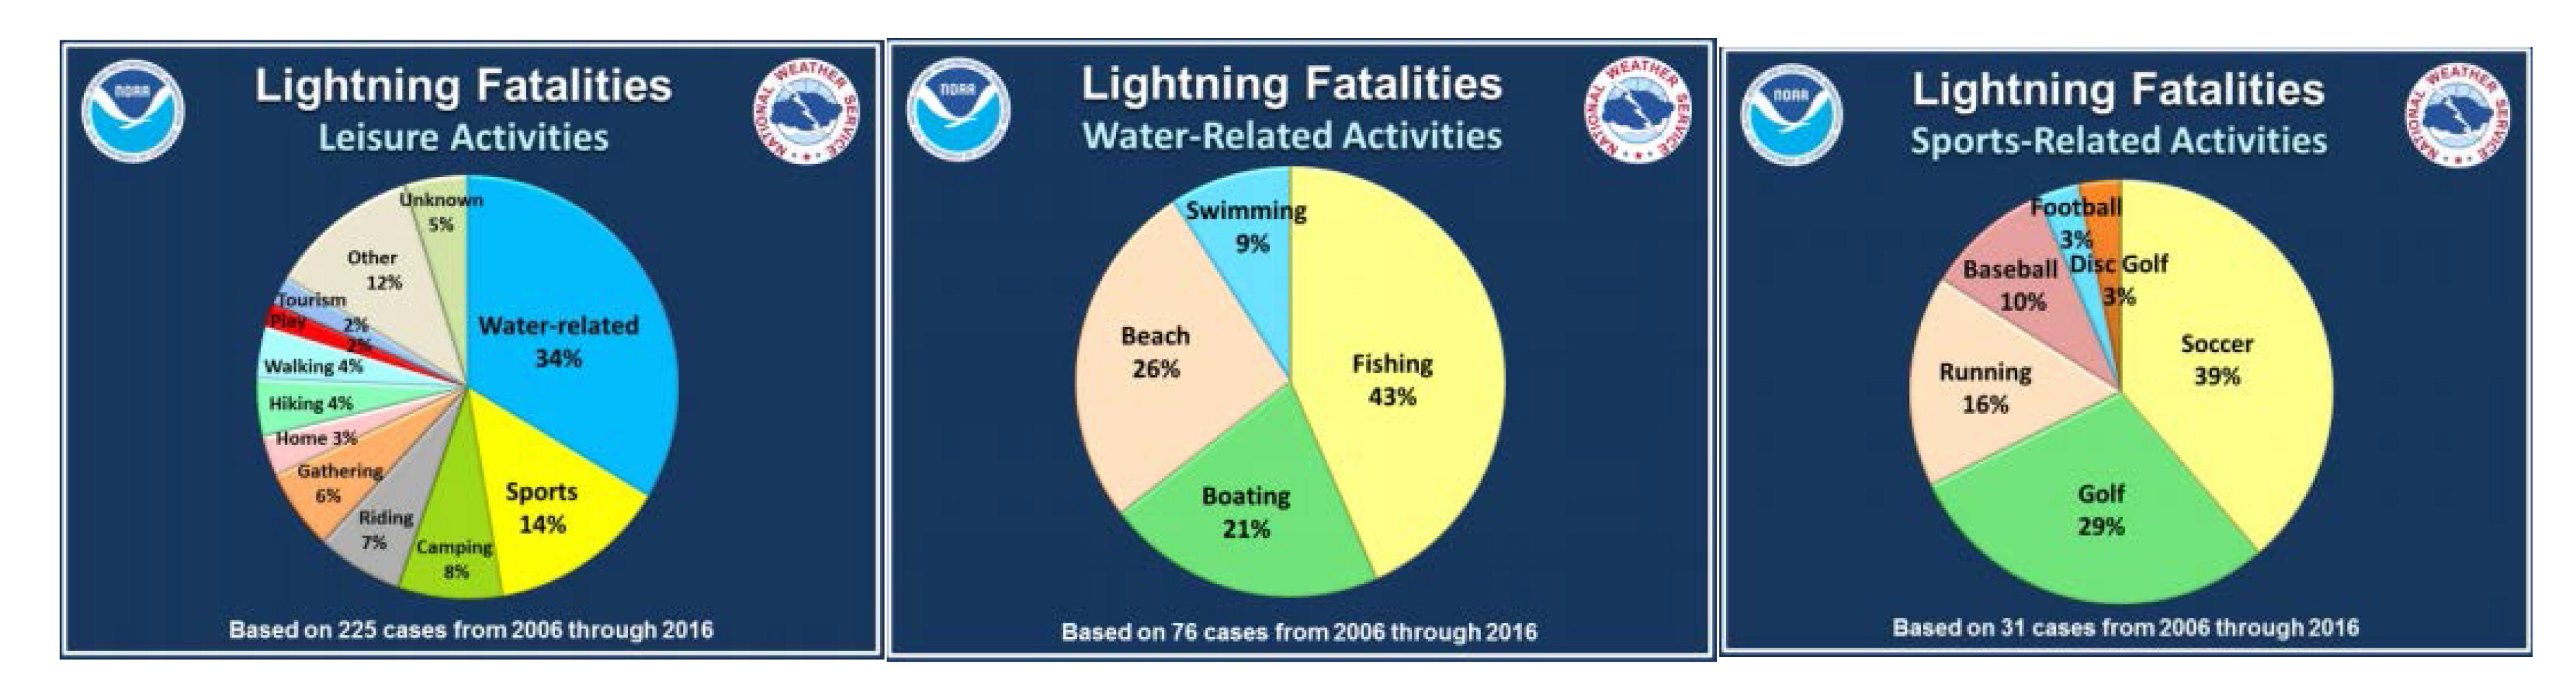 Lightning fatalities.jpg